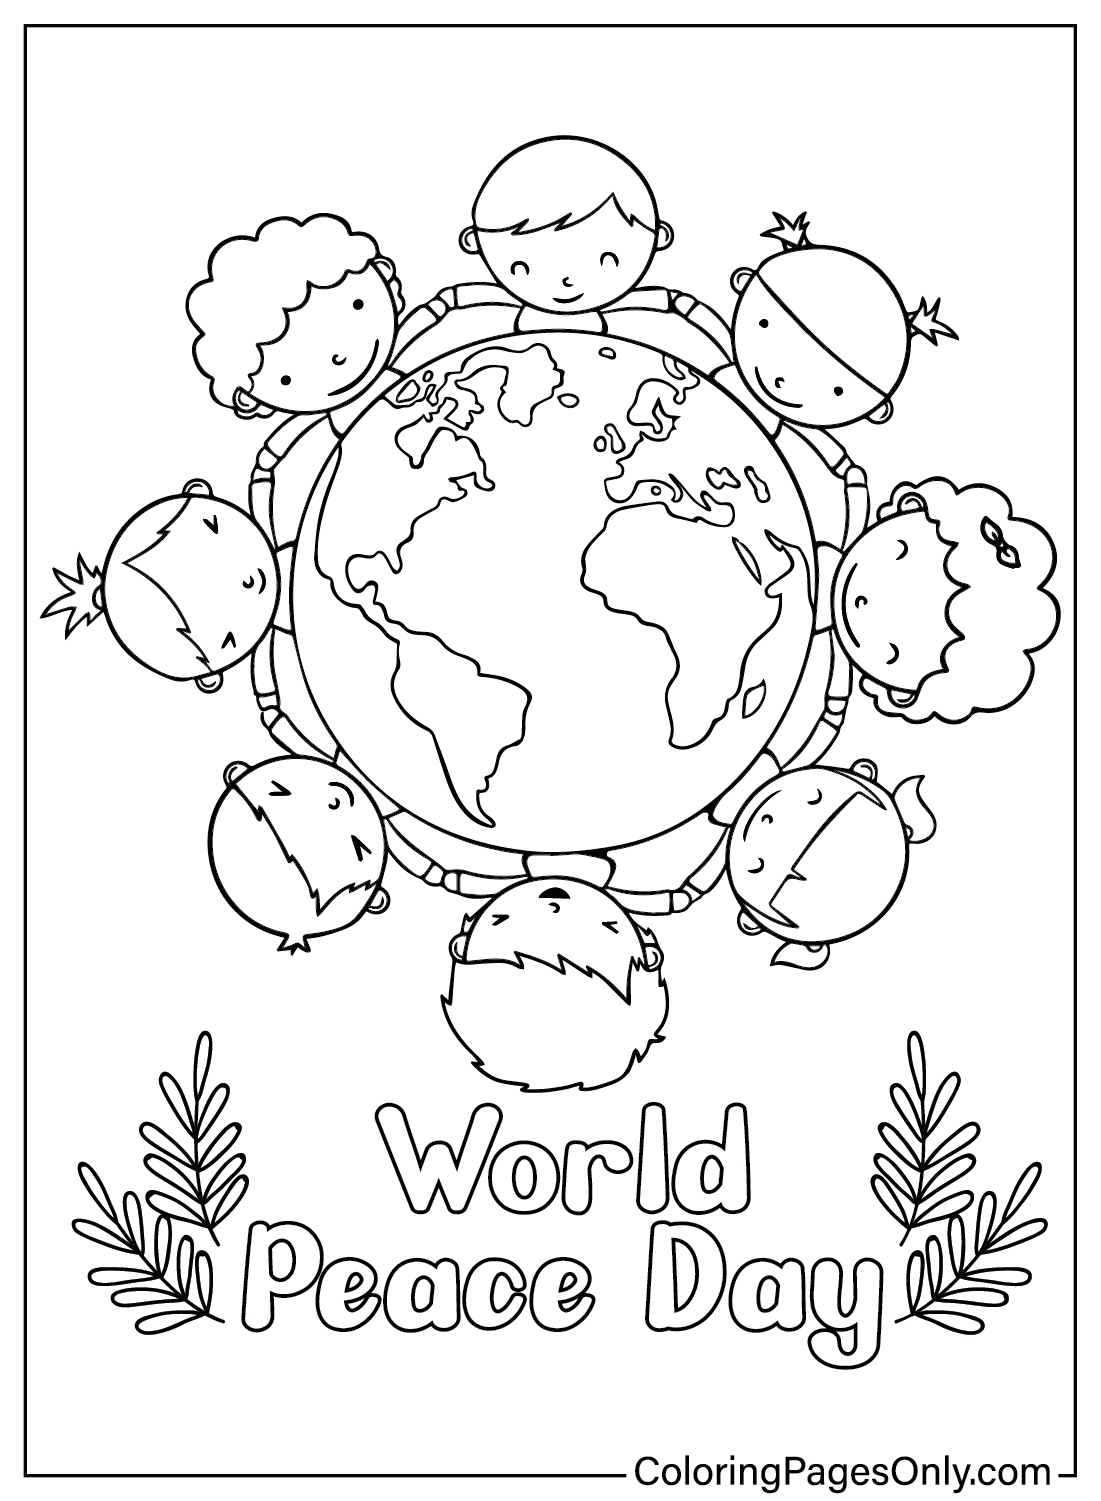 Раскраска Всемирного дня мира из Международного дня мира